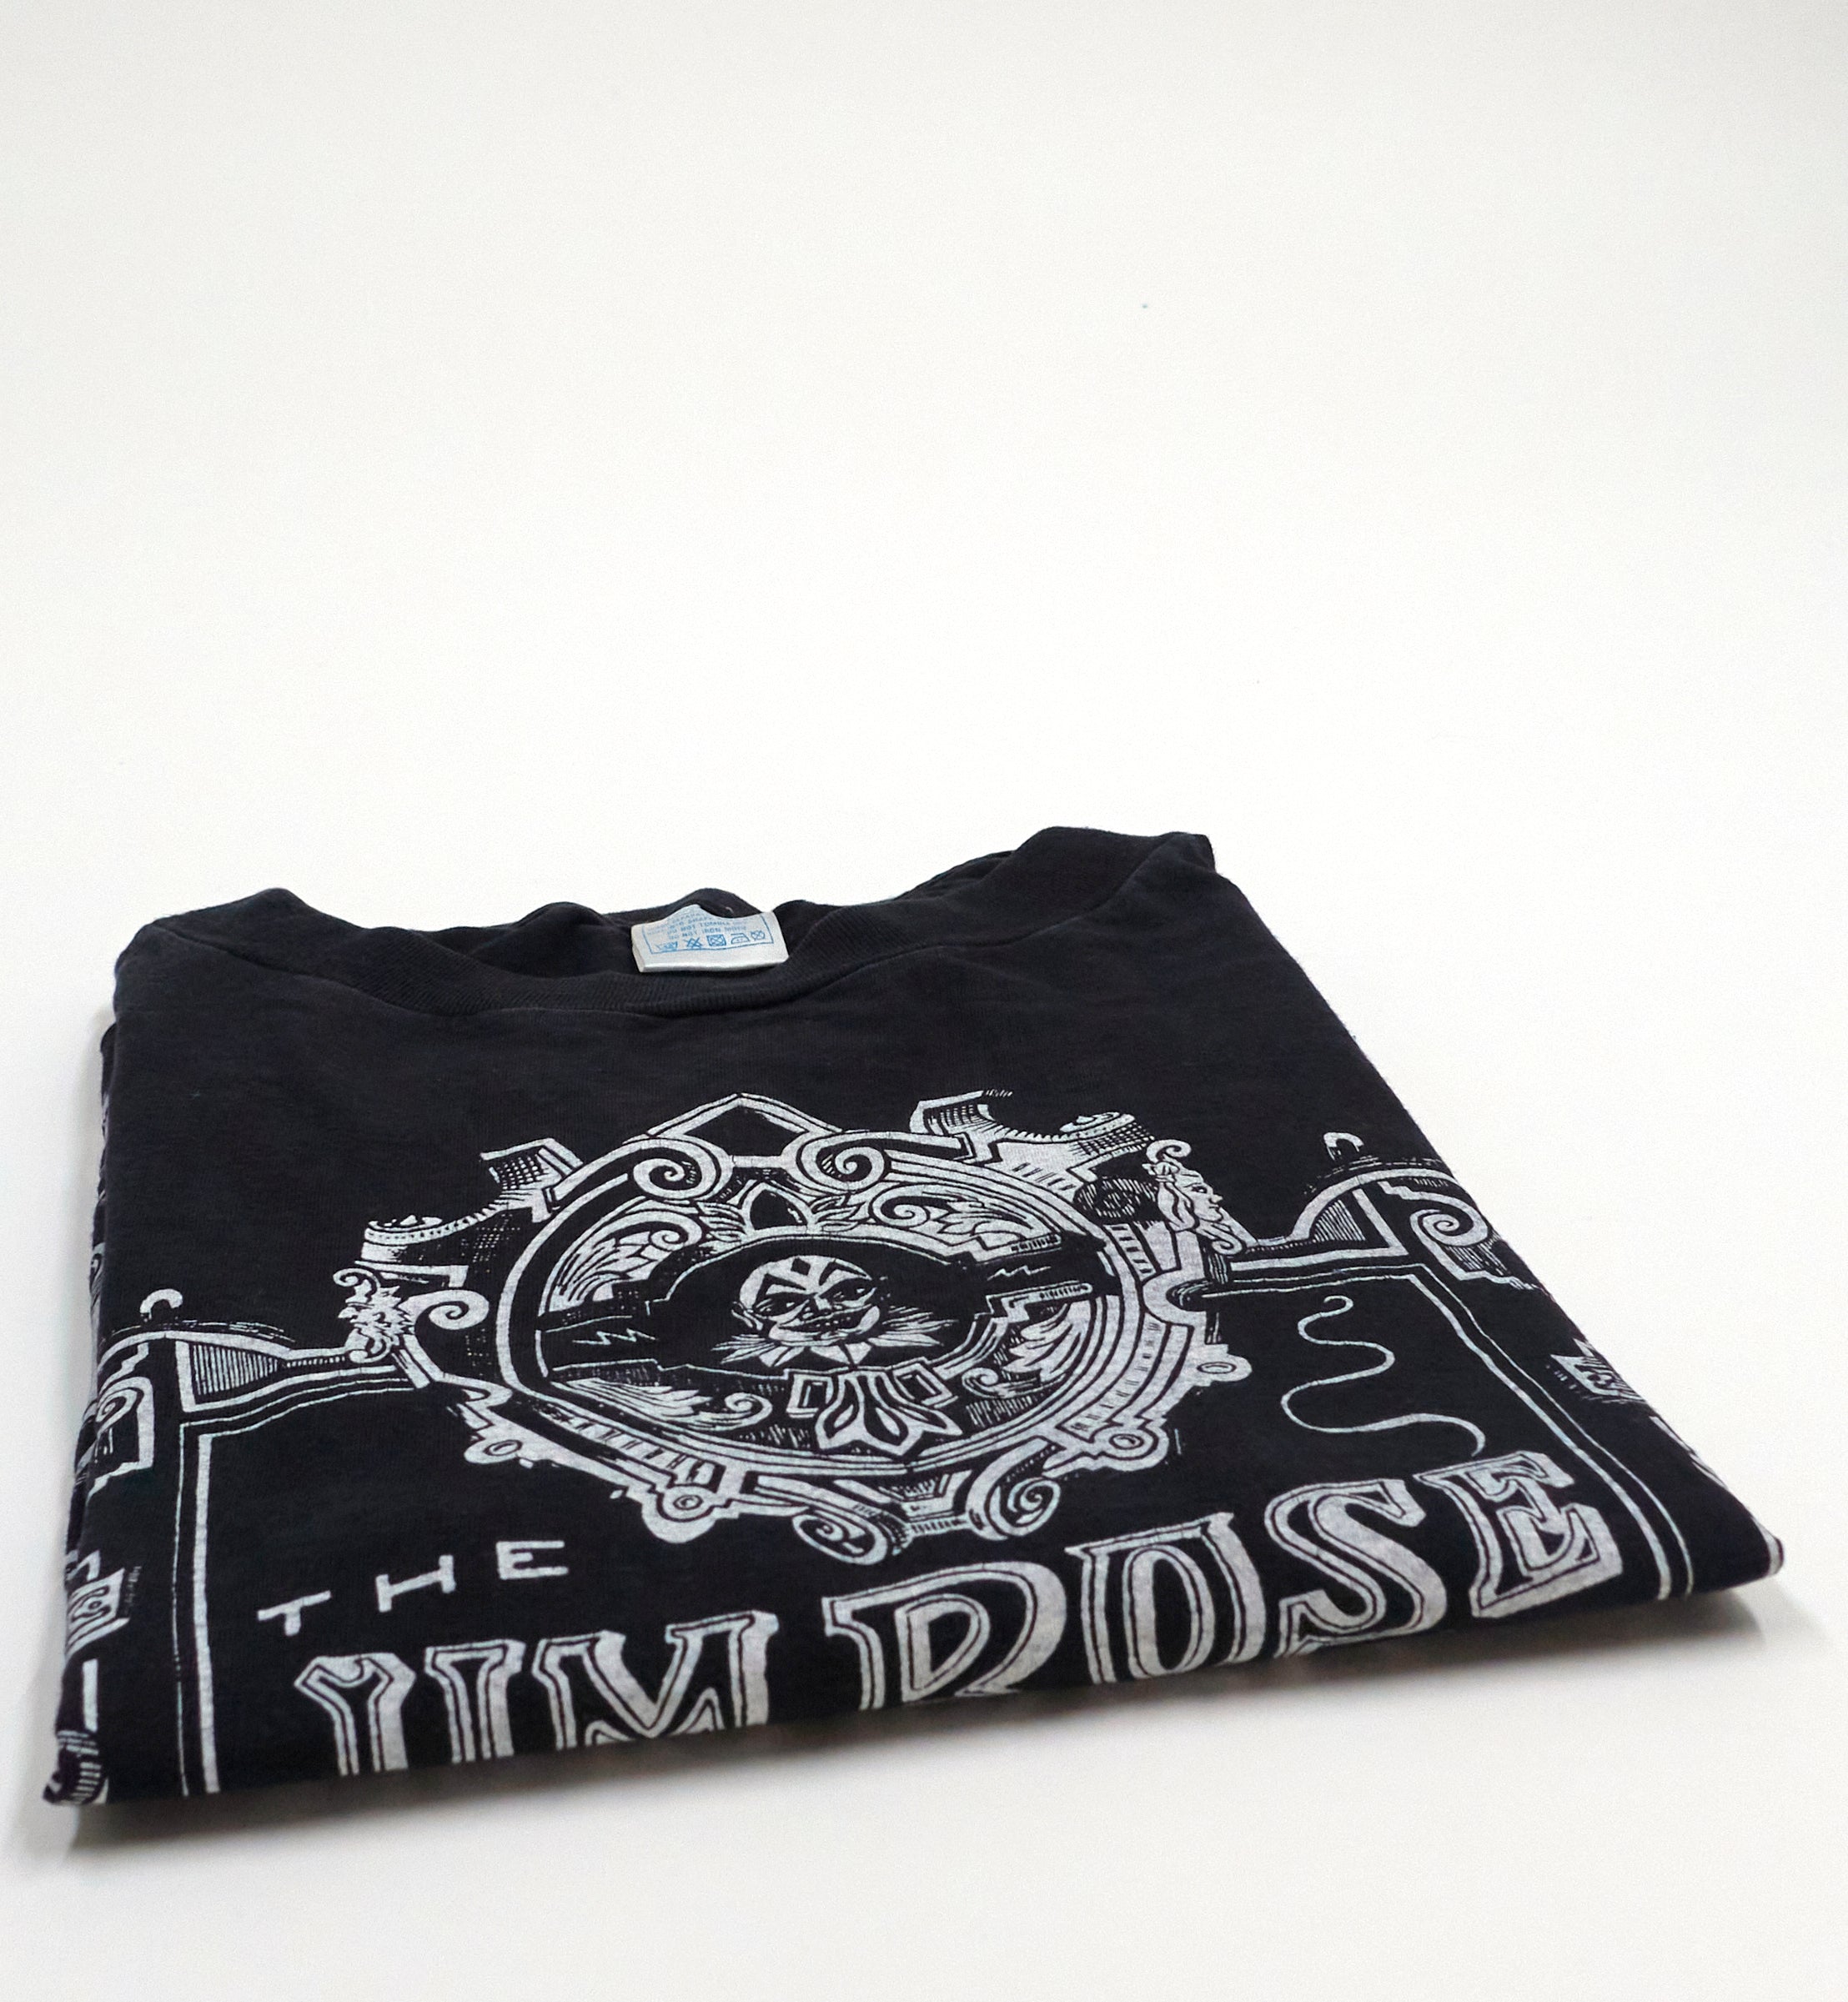 the Jim Rose Circus – Freak 1992 Tour Shirt Size XL